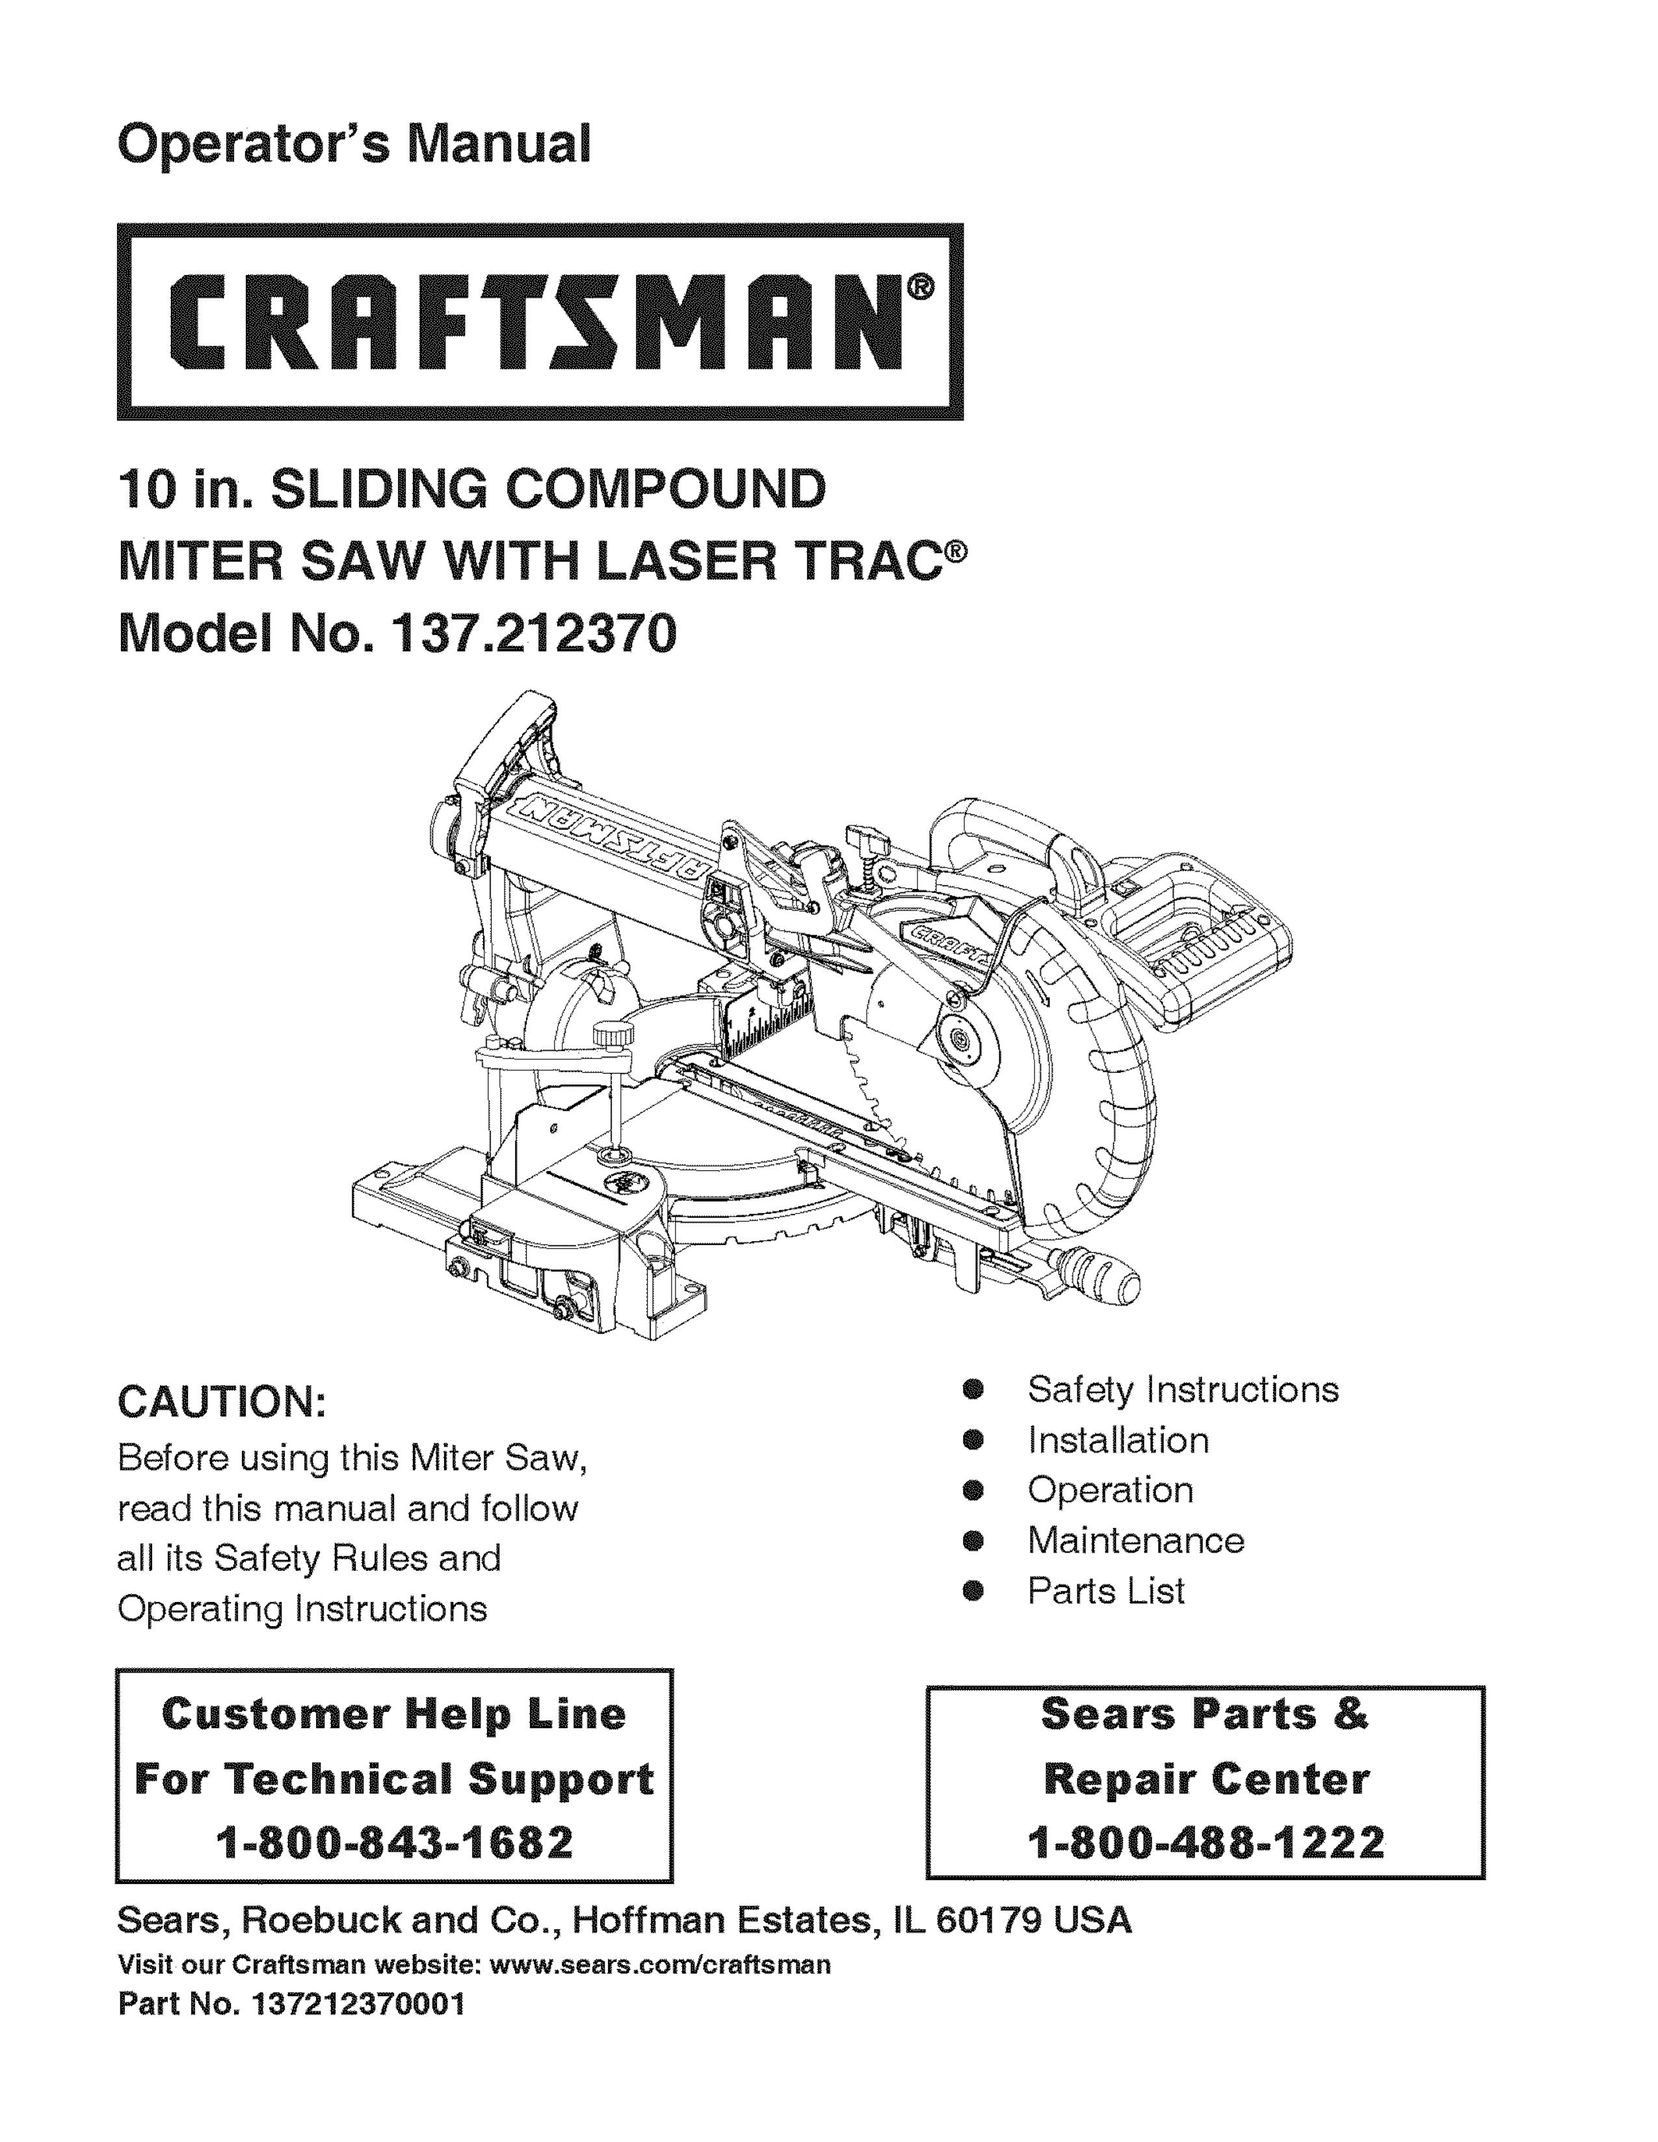 Craftsman 137.21237 Saw User Manual